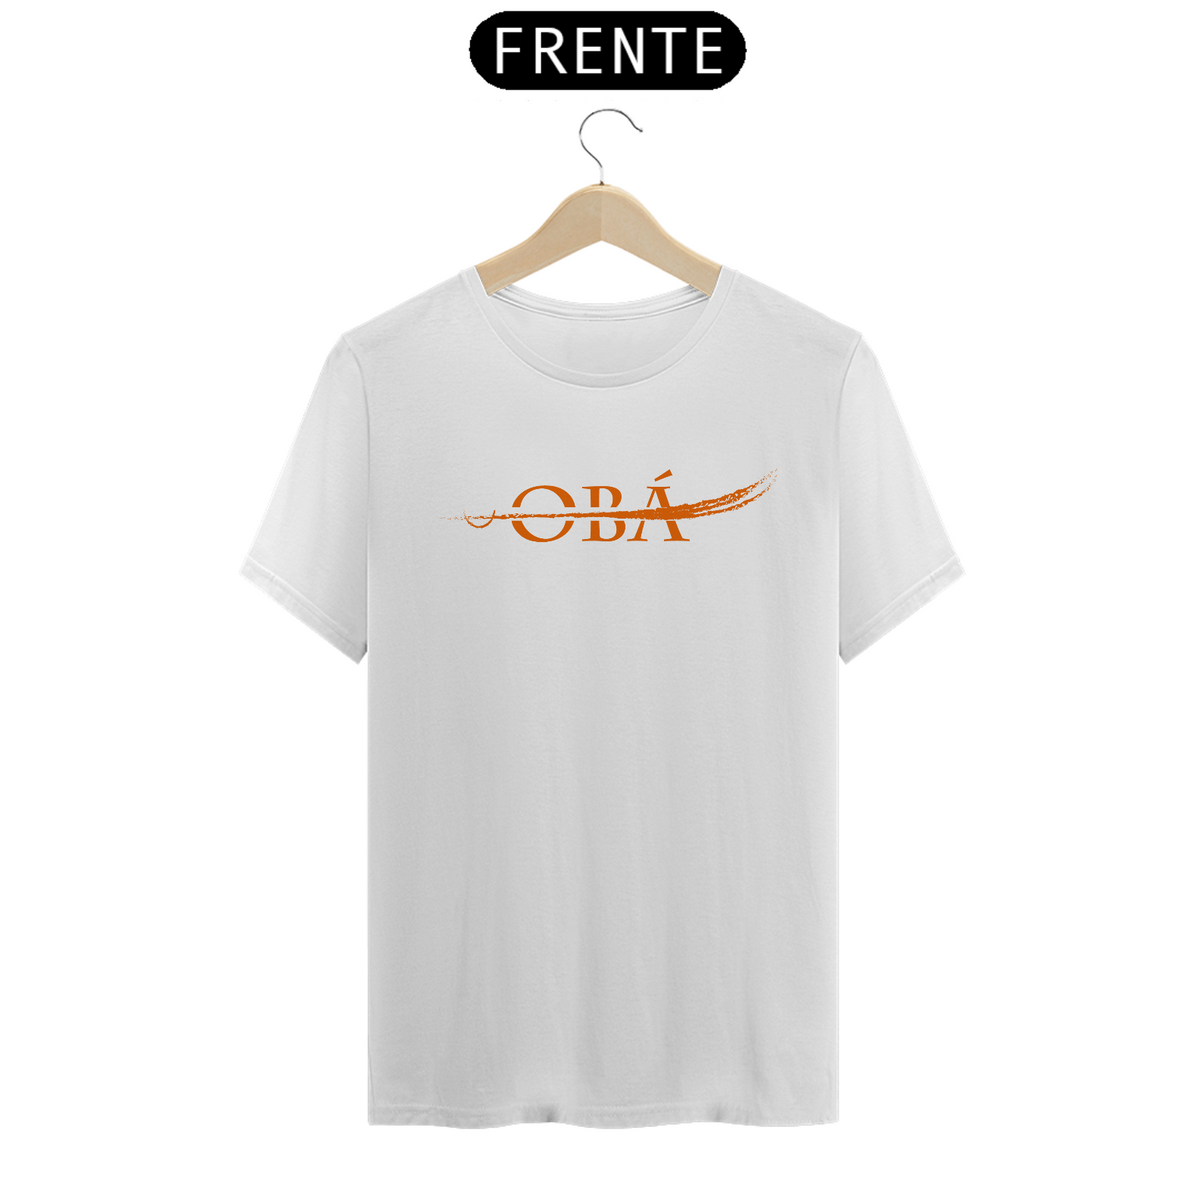 Nome do produto: T-Shirt Classic Branca - Okan Obá